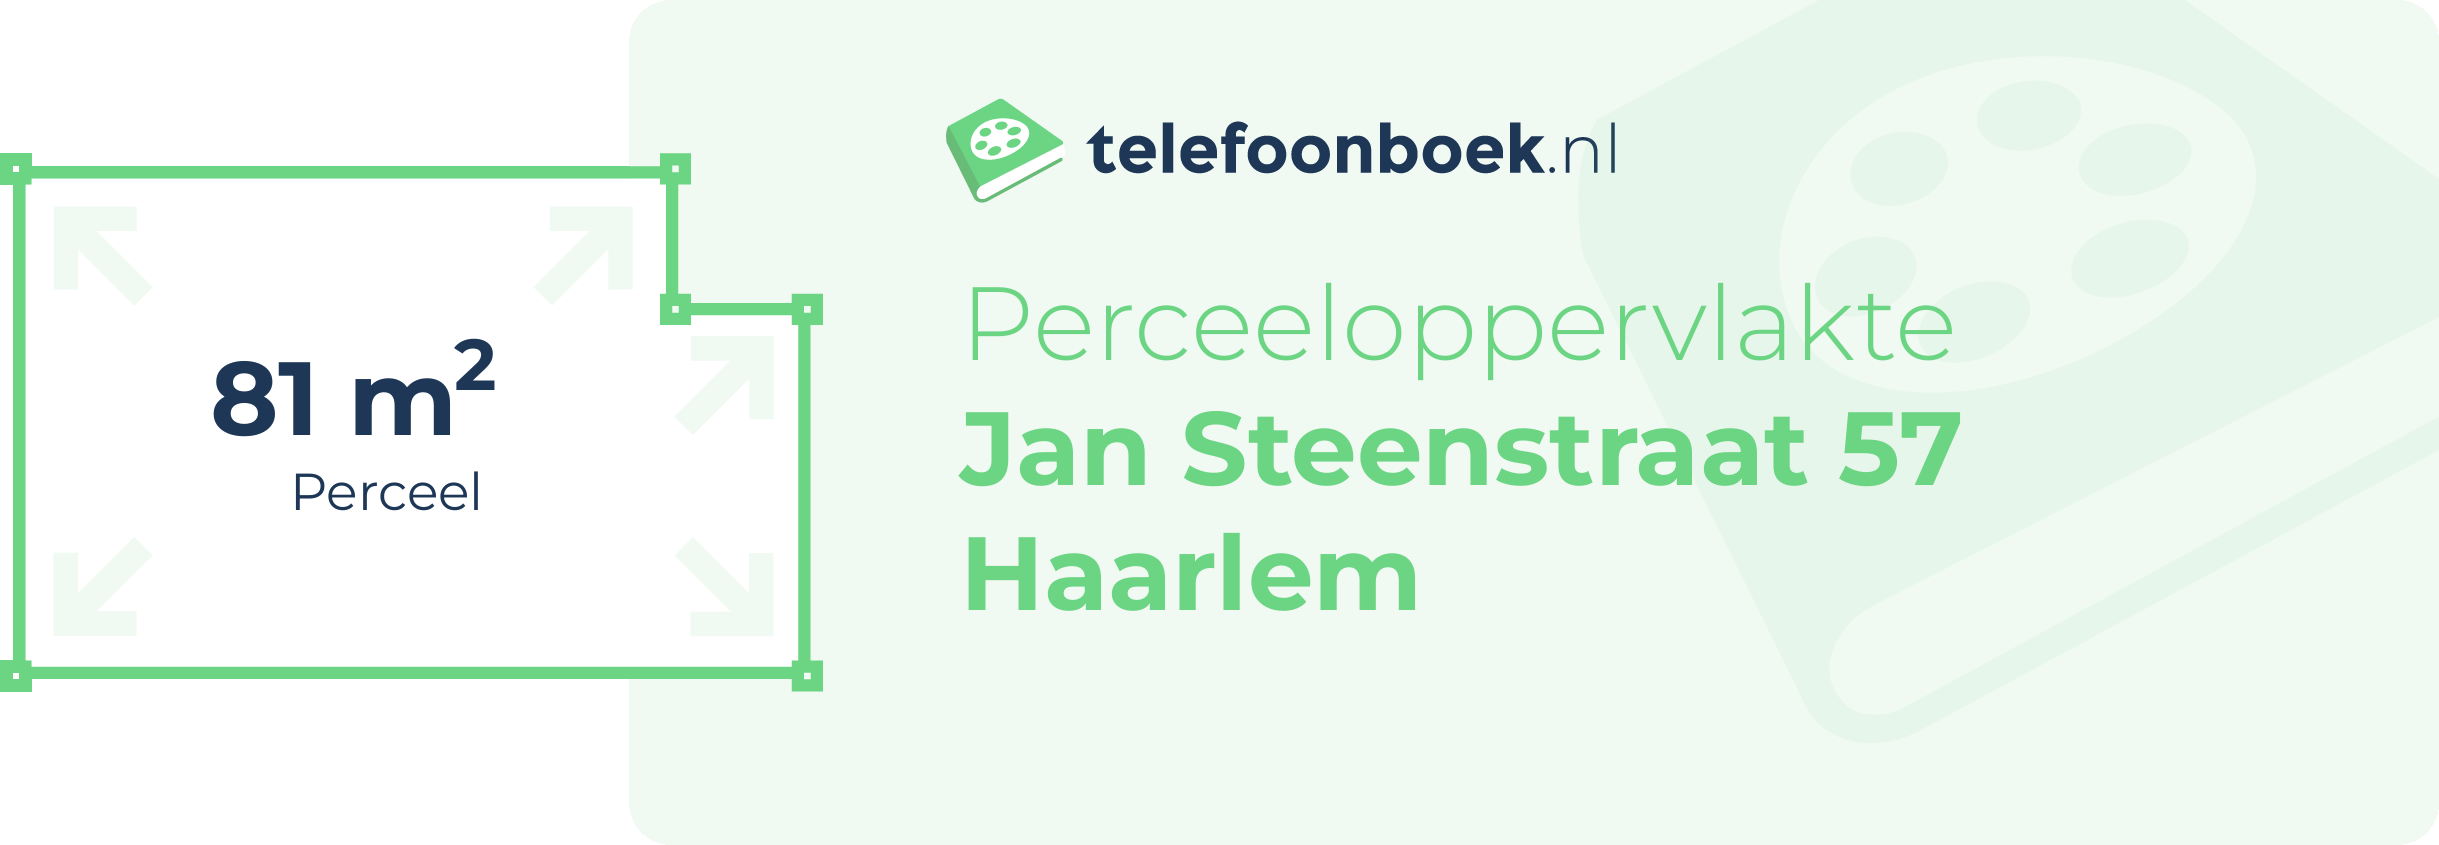 Perceeloppervlakte Jan Steenstraat 57 Haarlem